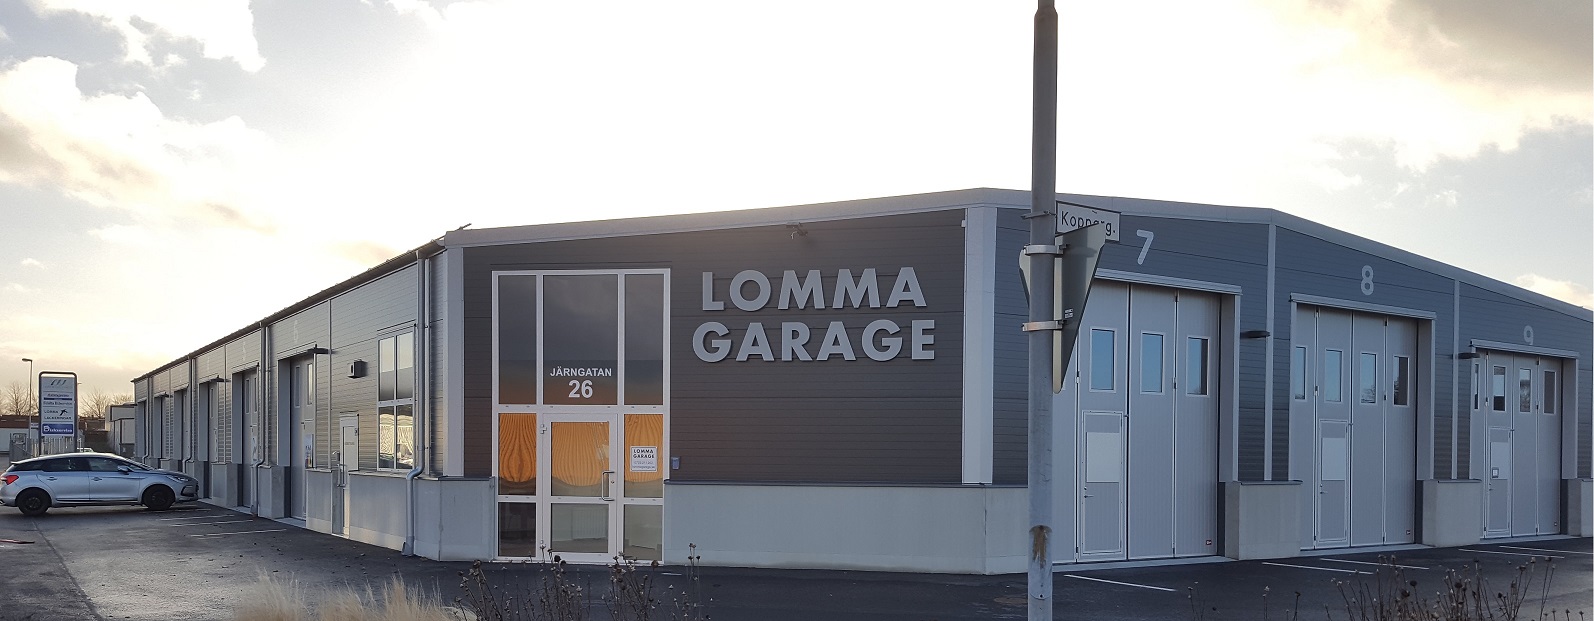 Lomma Garage utifrån